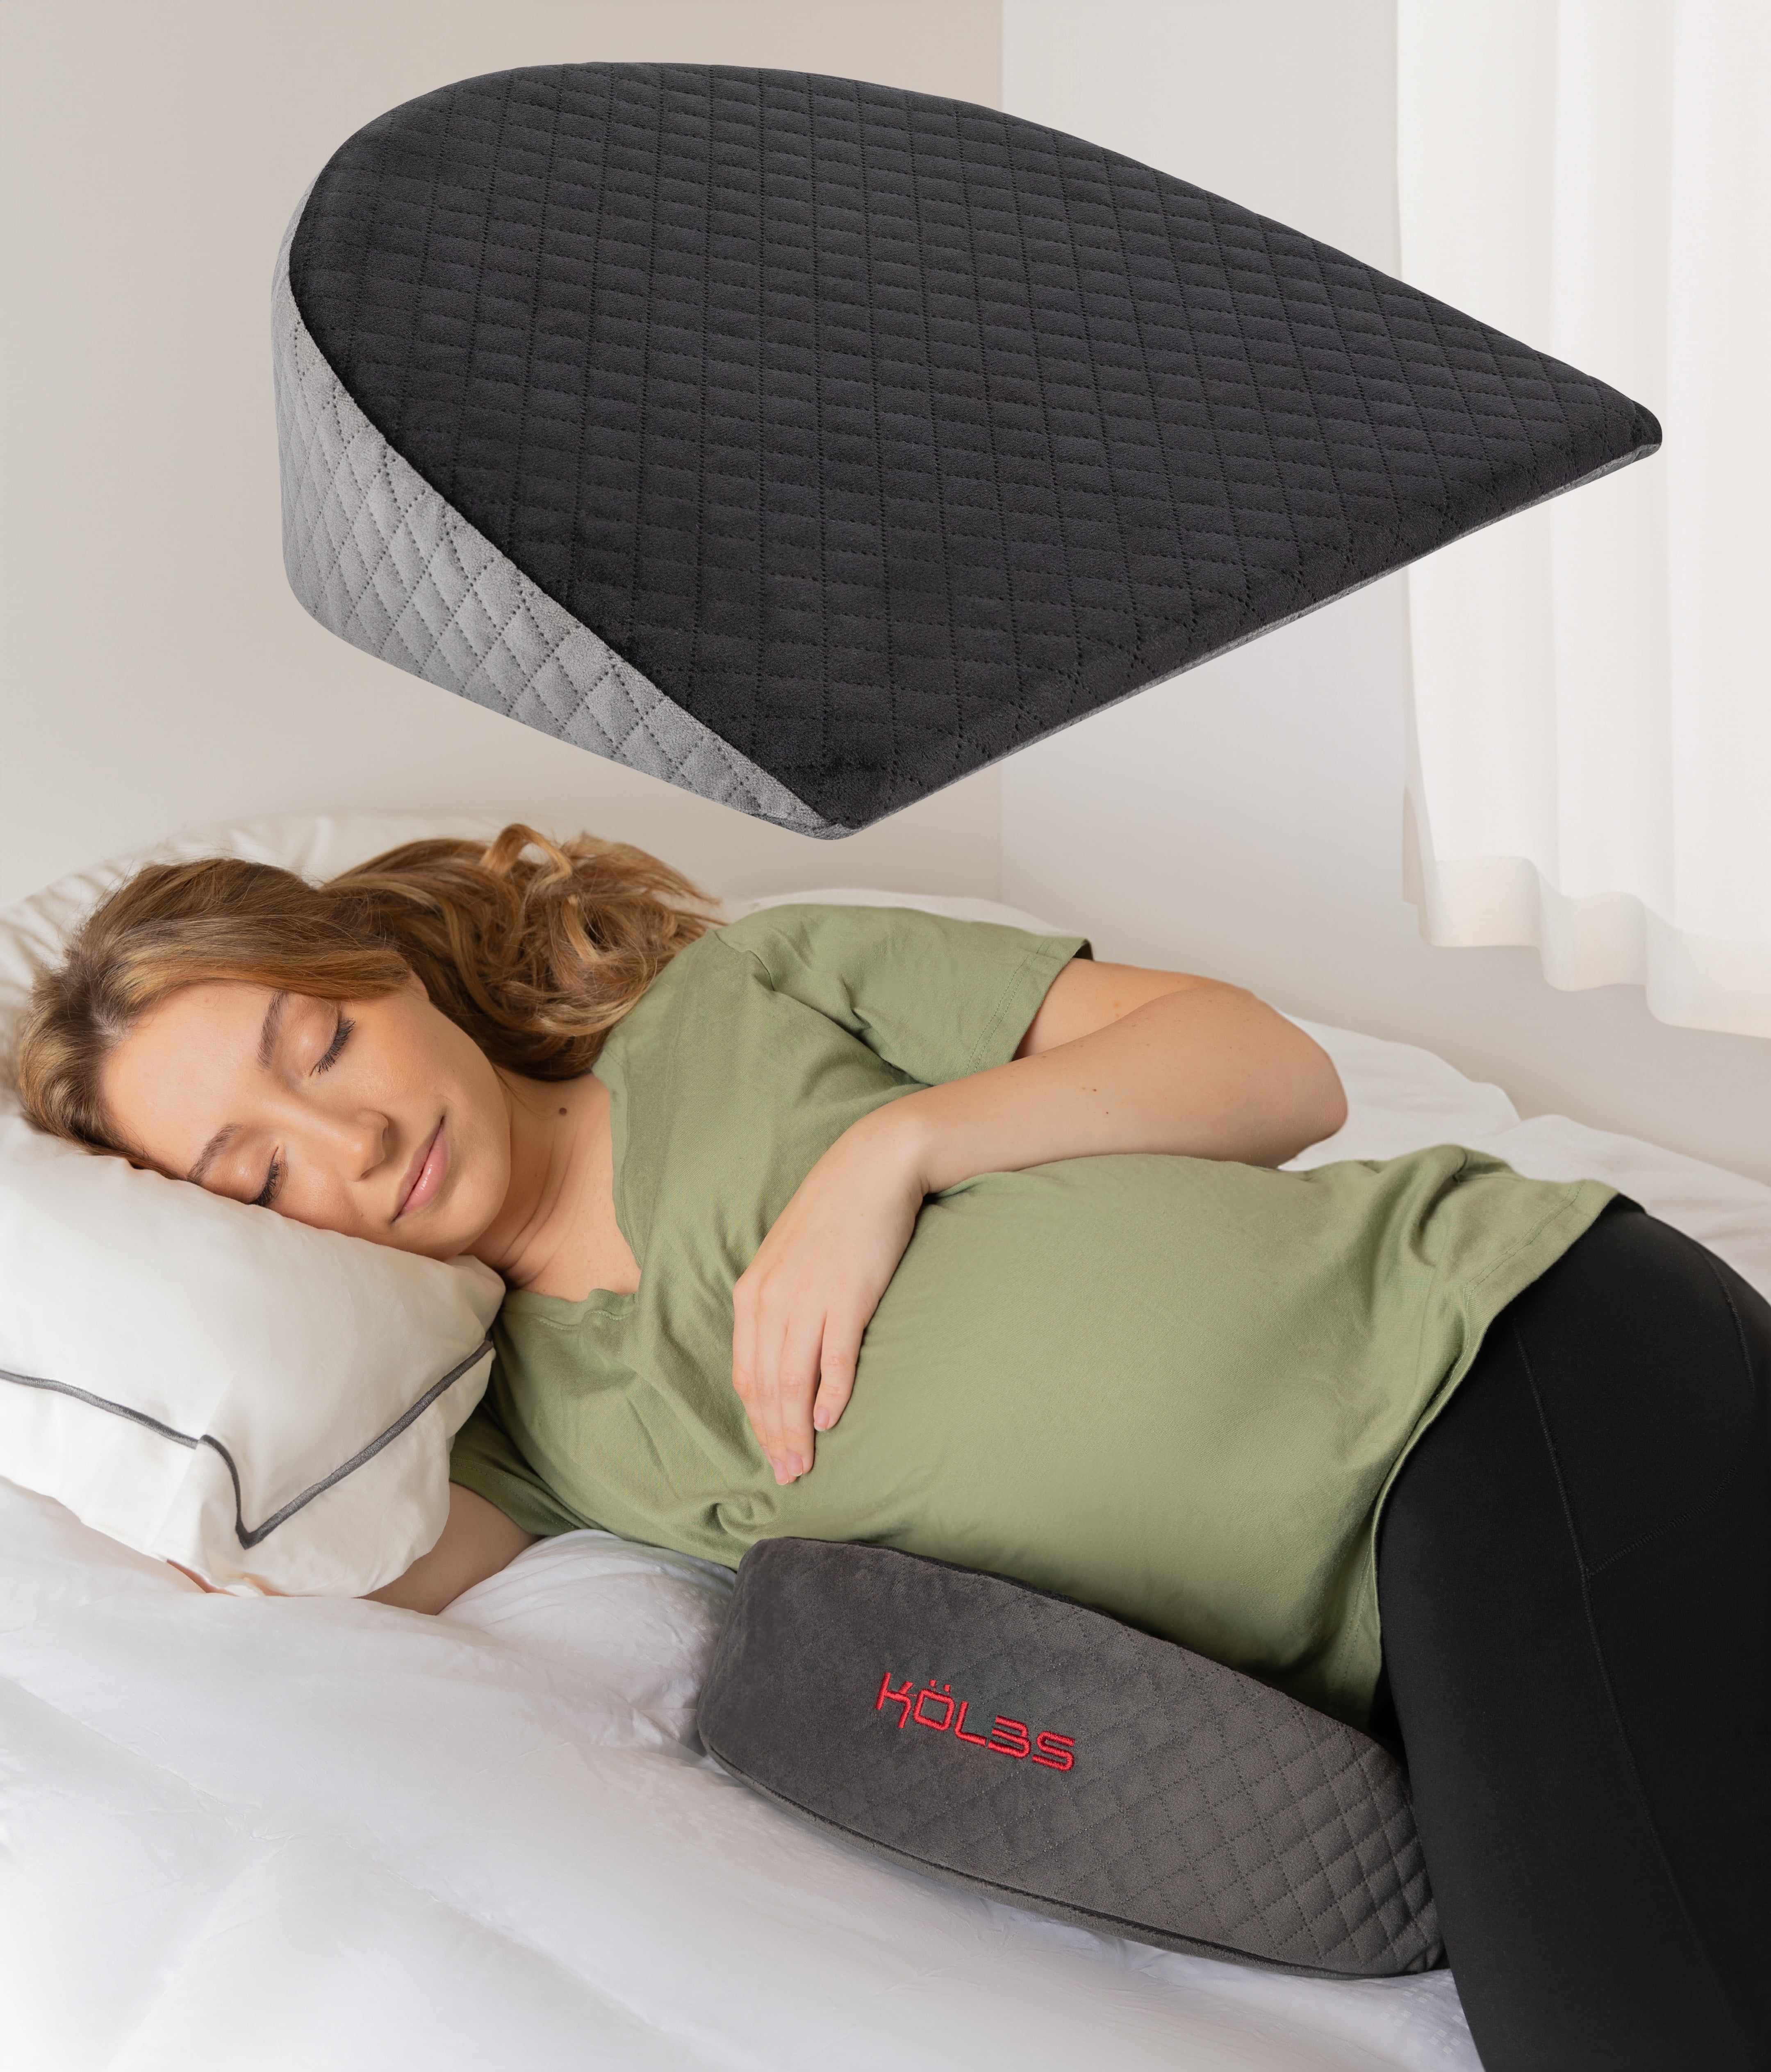 XGOPTS Pregnancy Pillows for Sleeping Adjustable Lumbar Support Pillow  Memory Foam Waist Back Support Pillow Breathable Back Cushion Pad Sleeper